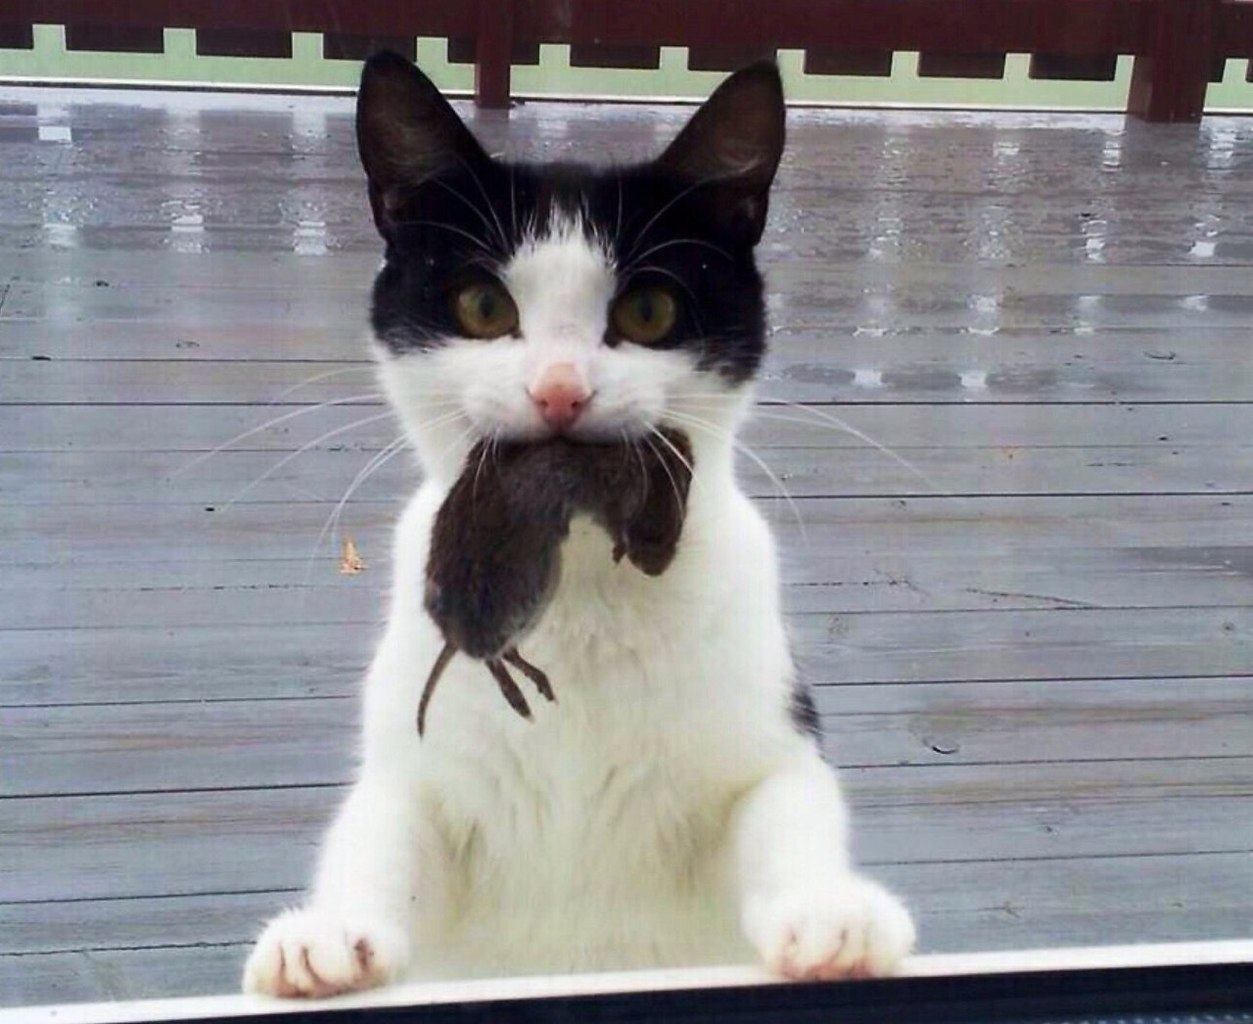 Кошка с мышью в зубах